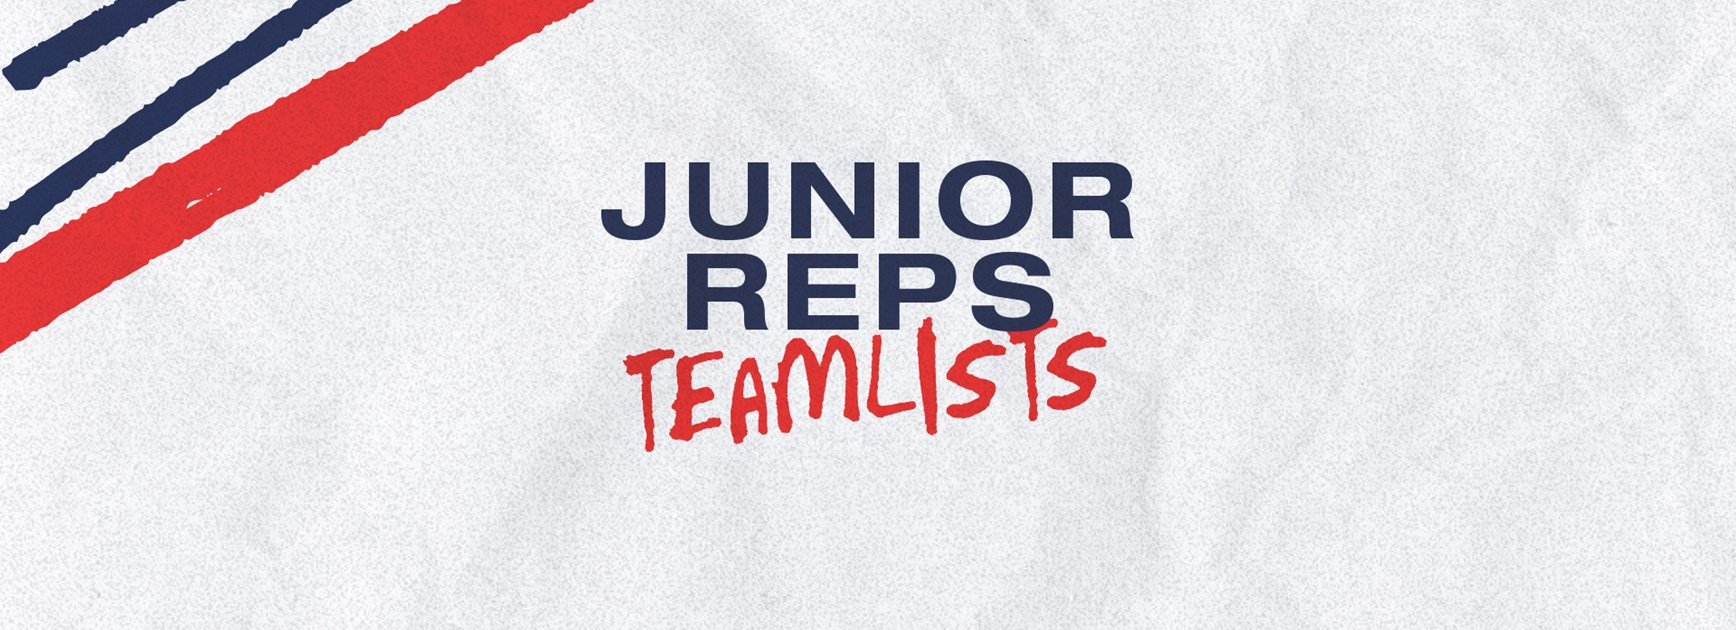 Junior Representative Teamlists for Round 8 Announced